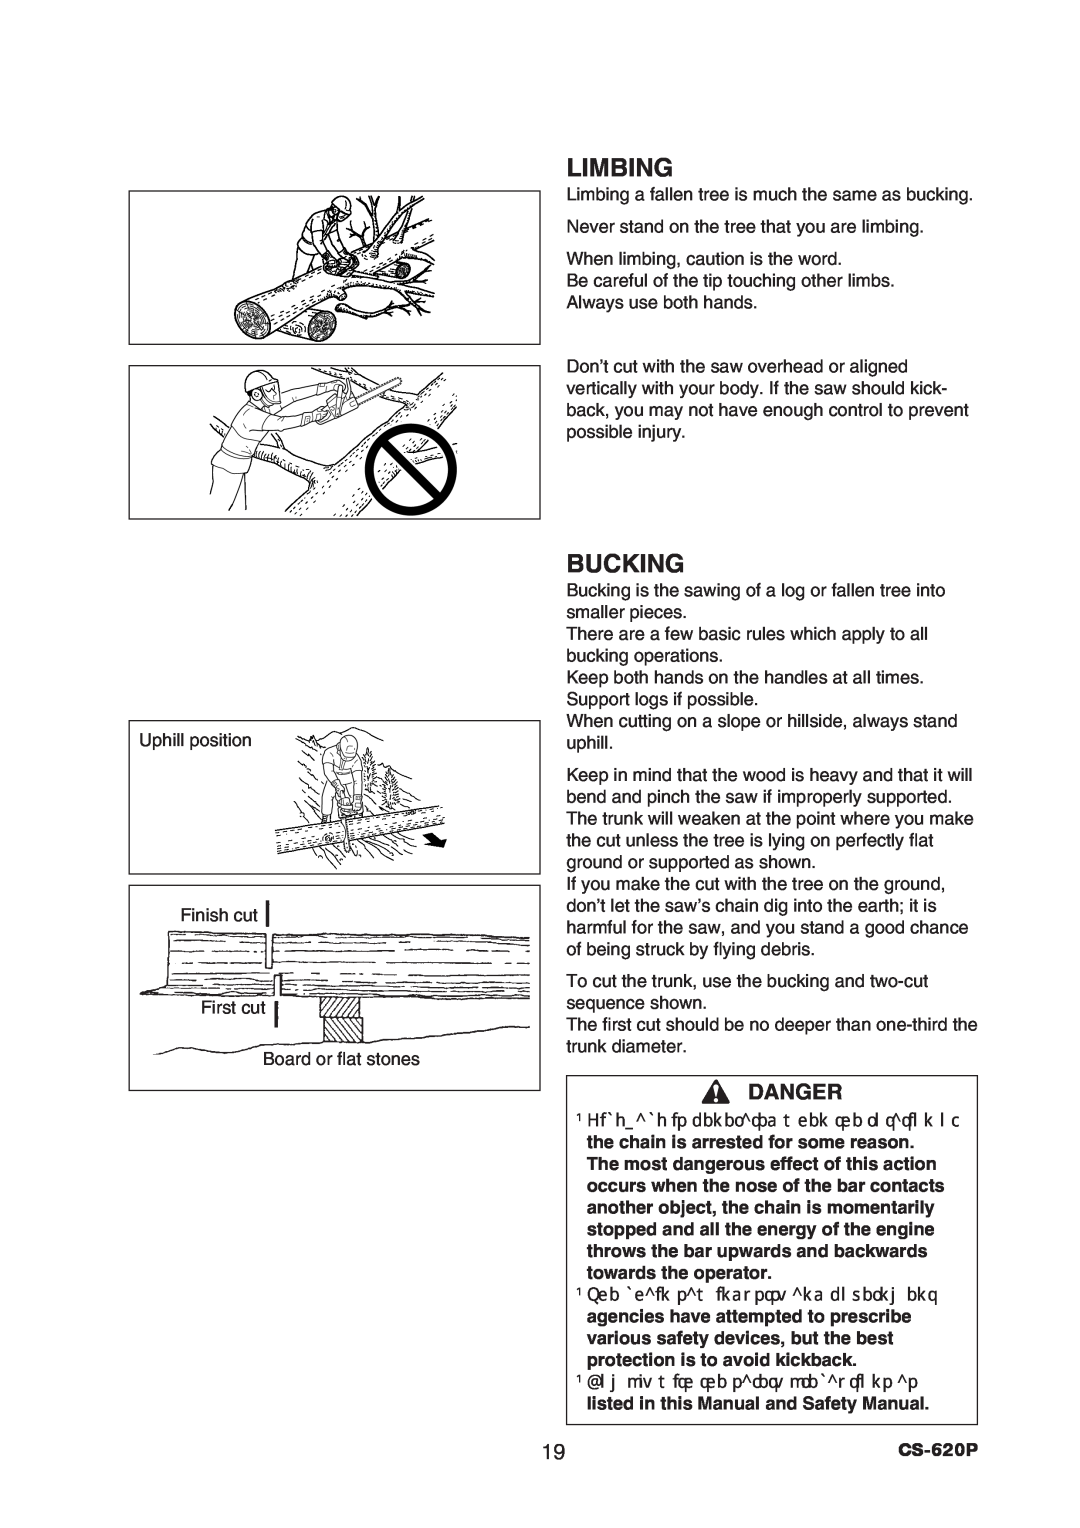 Echo CS-620P instruction manual Limbing, Bucking, Danger 